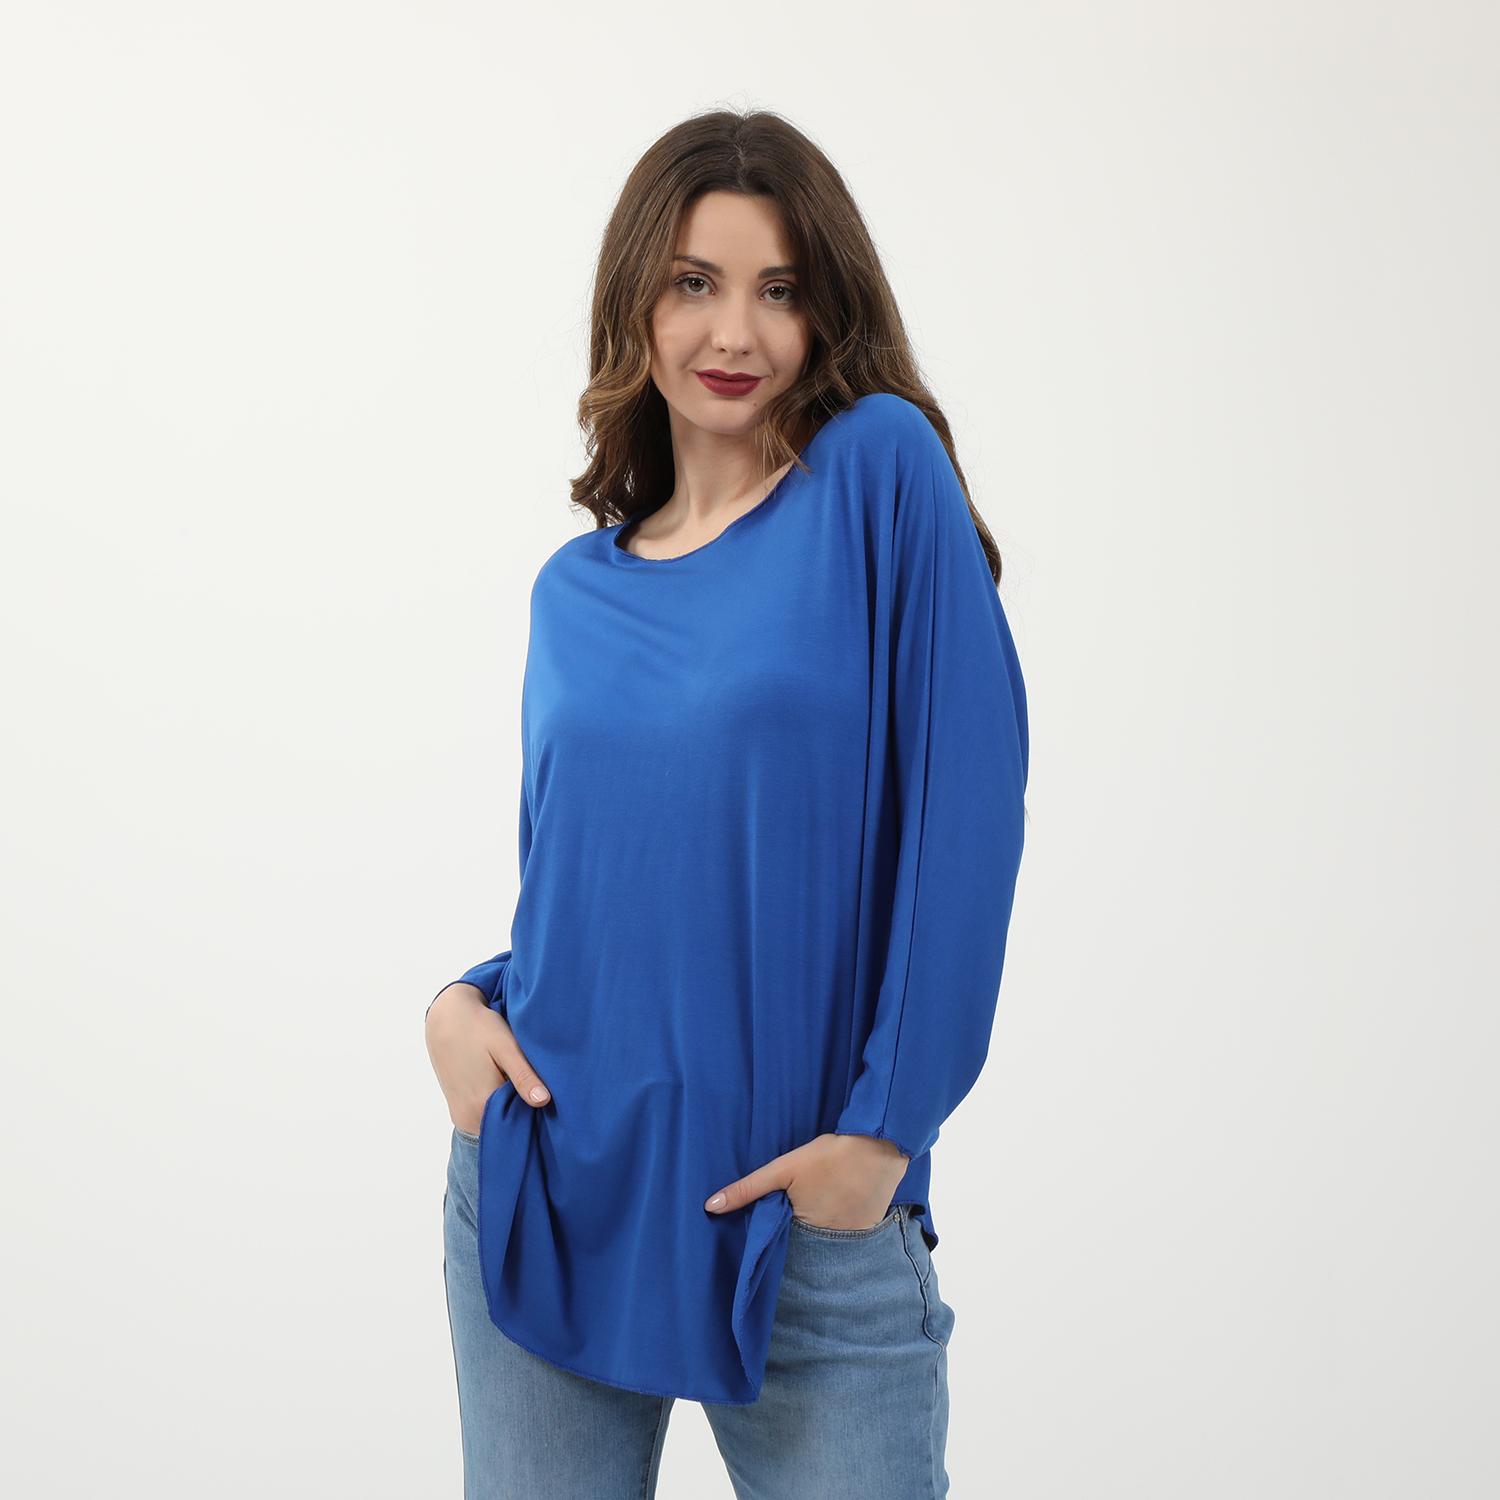 Γυναικεία/Ρούχα/Μπλούζες/Μακρυμάνικες ATTRATTIVO - Γυναικεία μακριά μπλούζα ATTRATTIVO μπλε